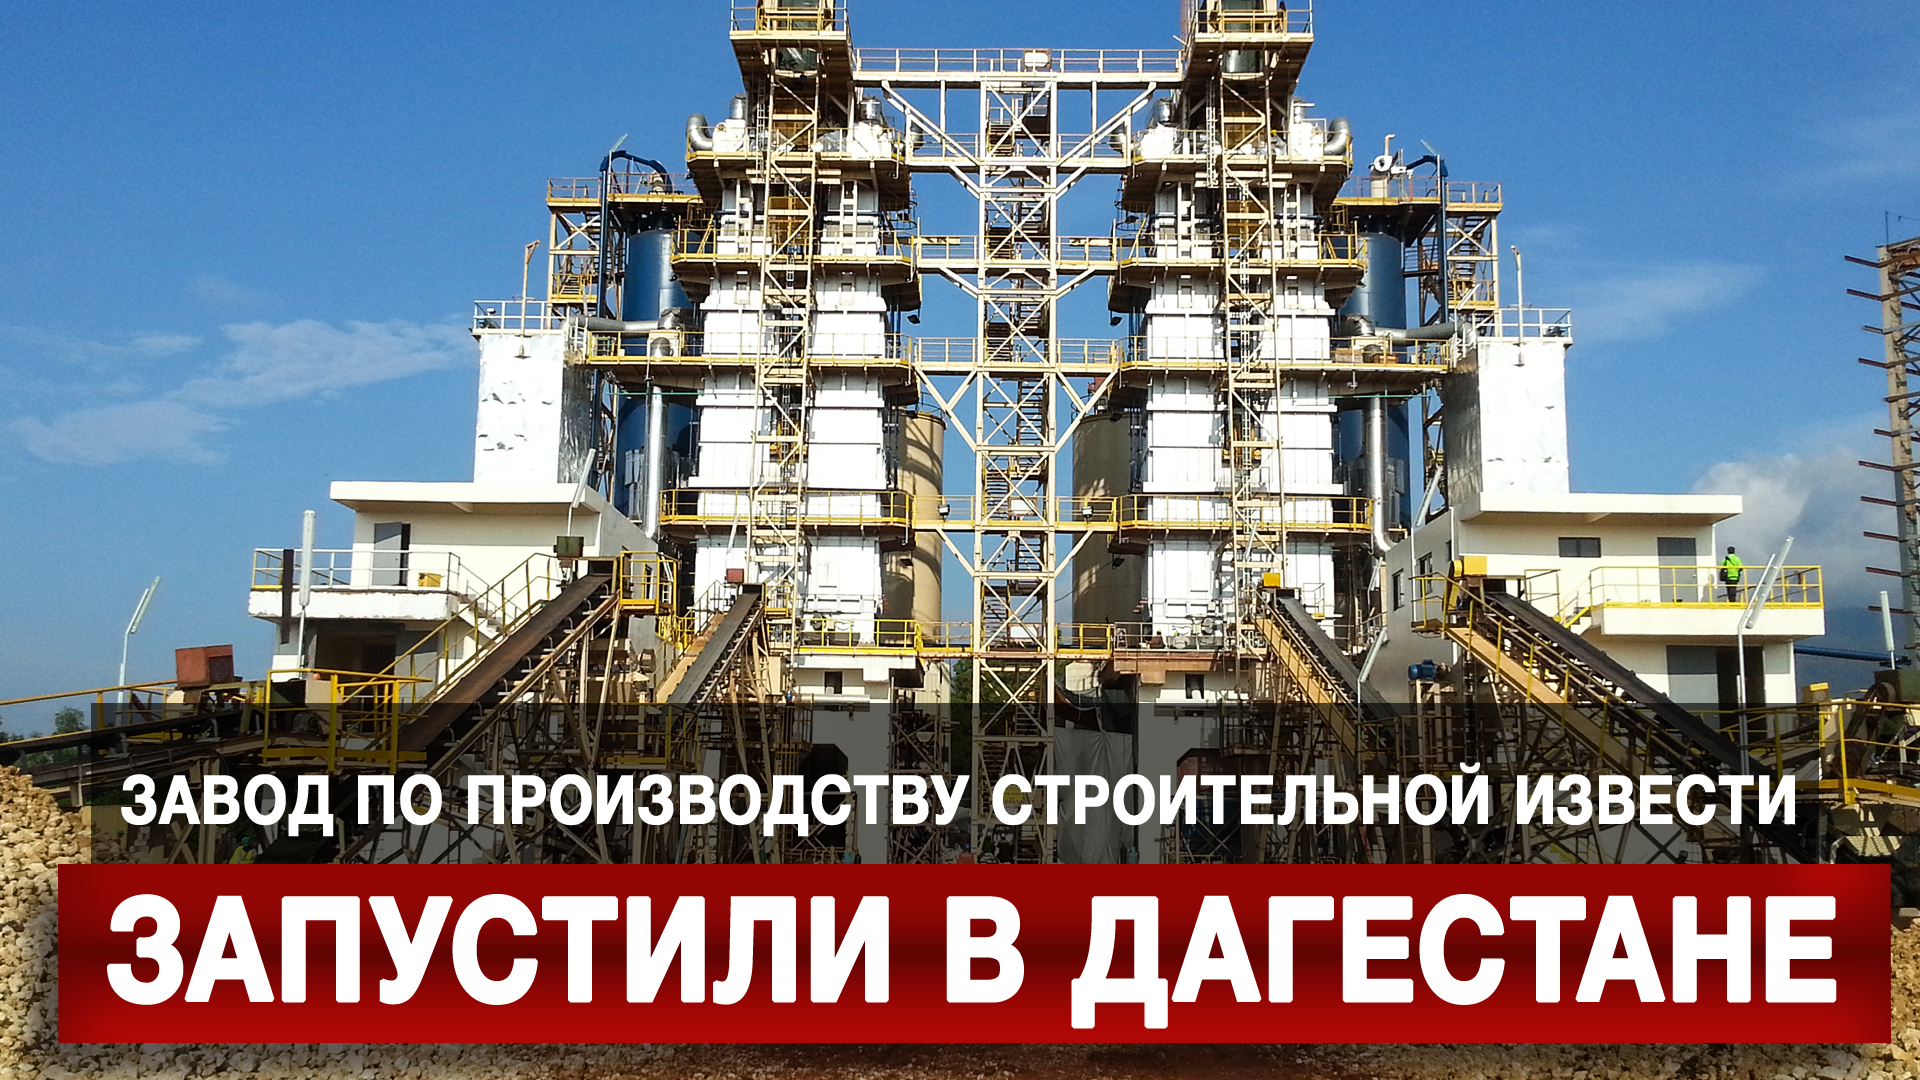 Завод по производству строительной извести запустили в Дагестане